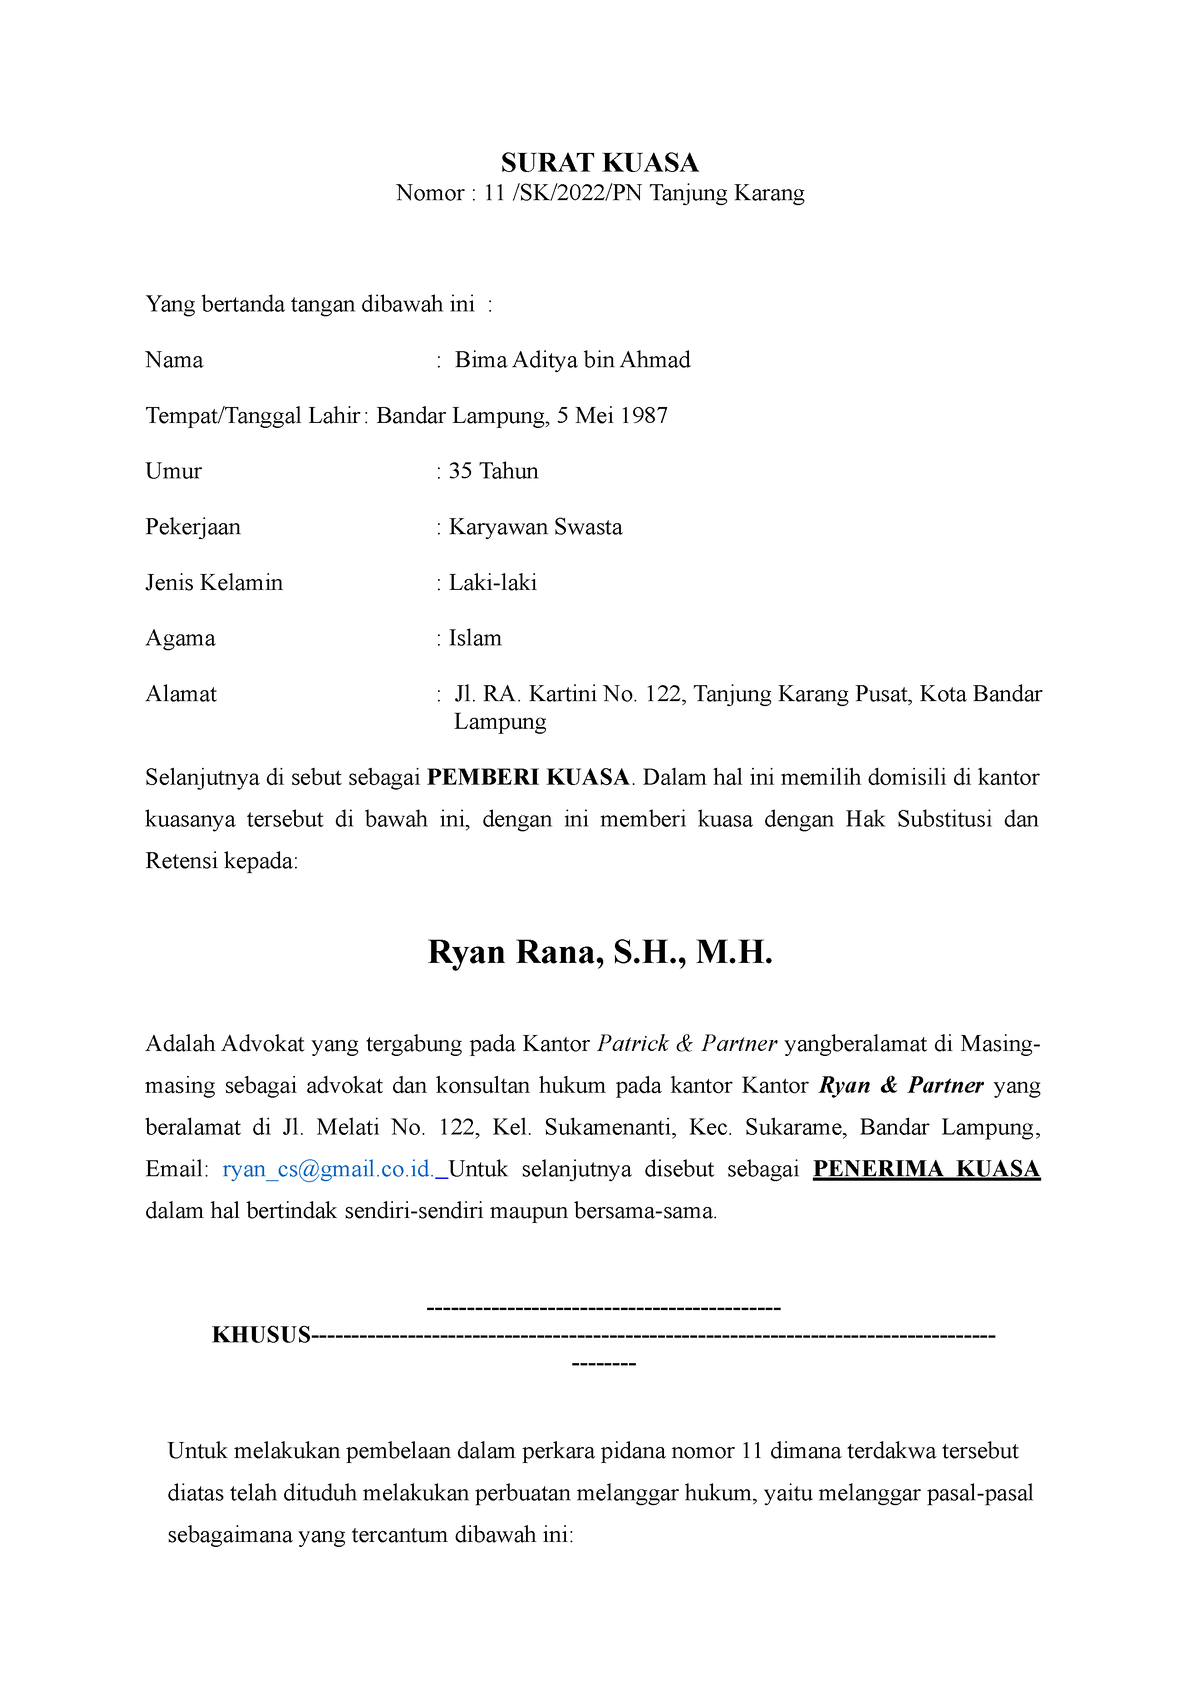 Surat Kuasa Perkara Pidana Surat Kuasa Nomor 11 Sk2022pn Tanjung